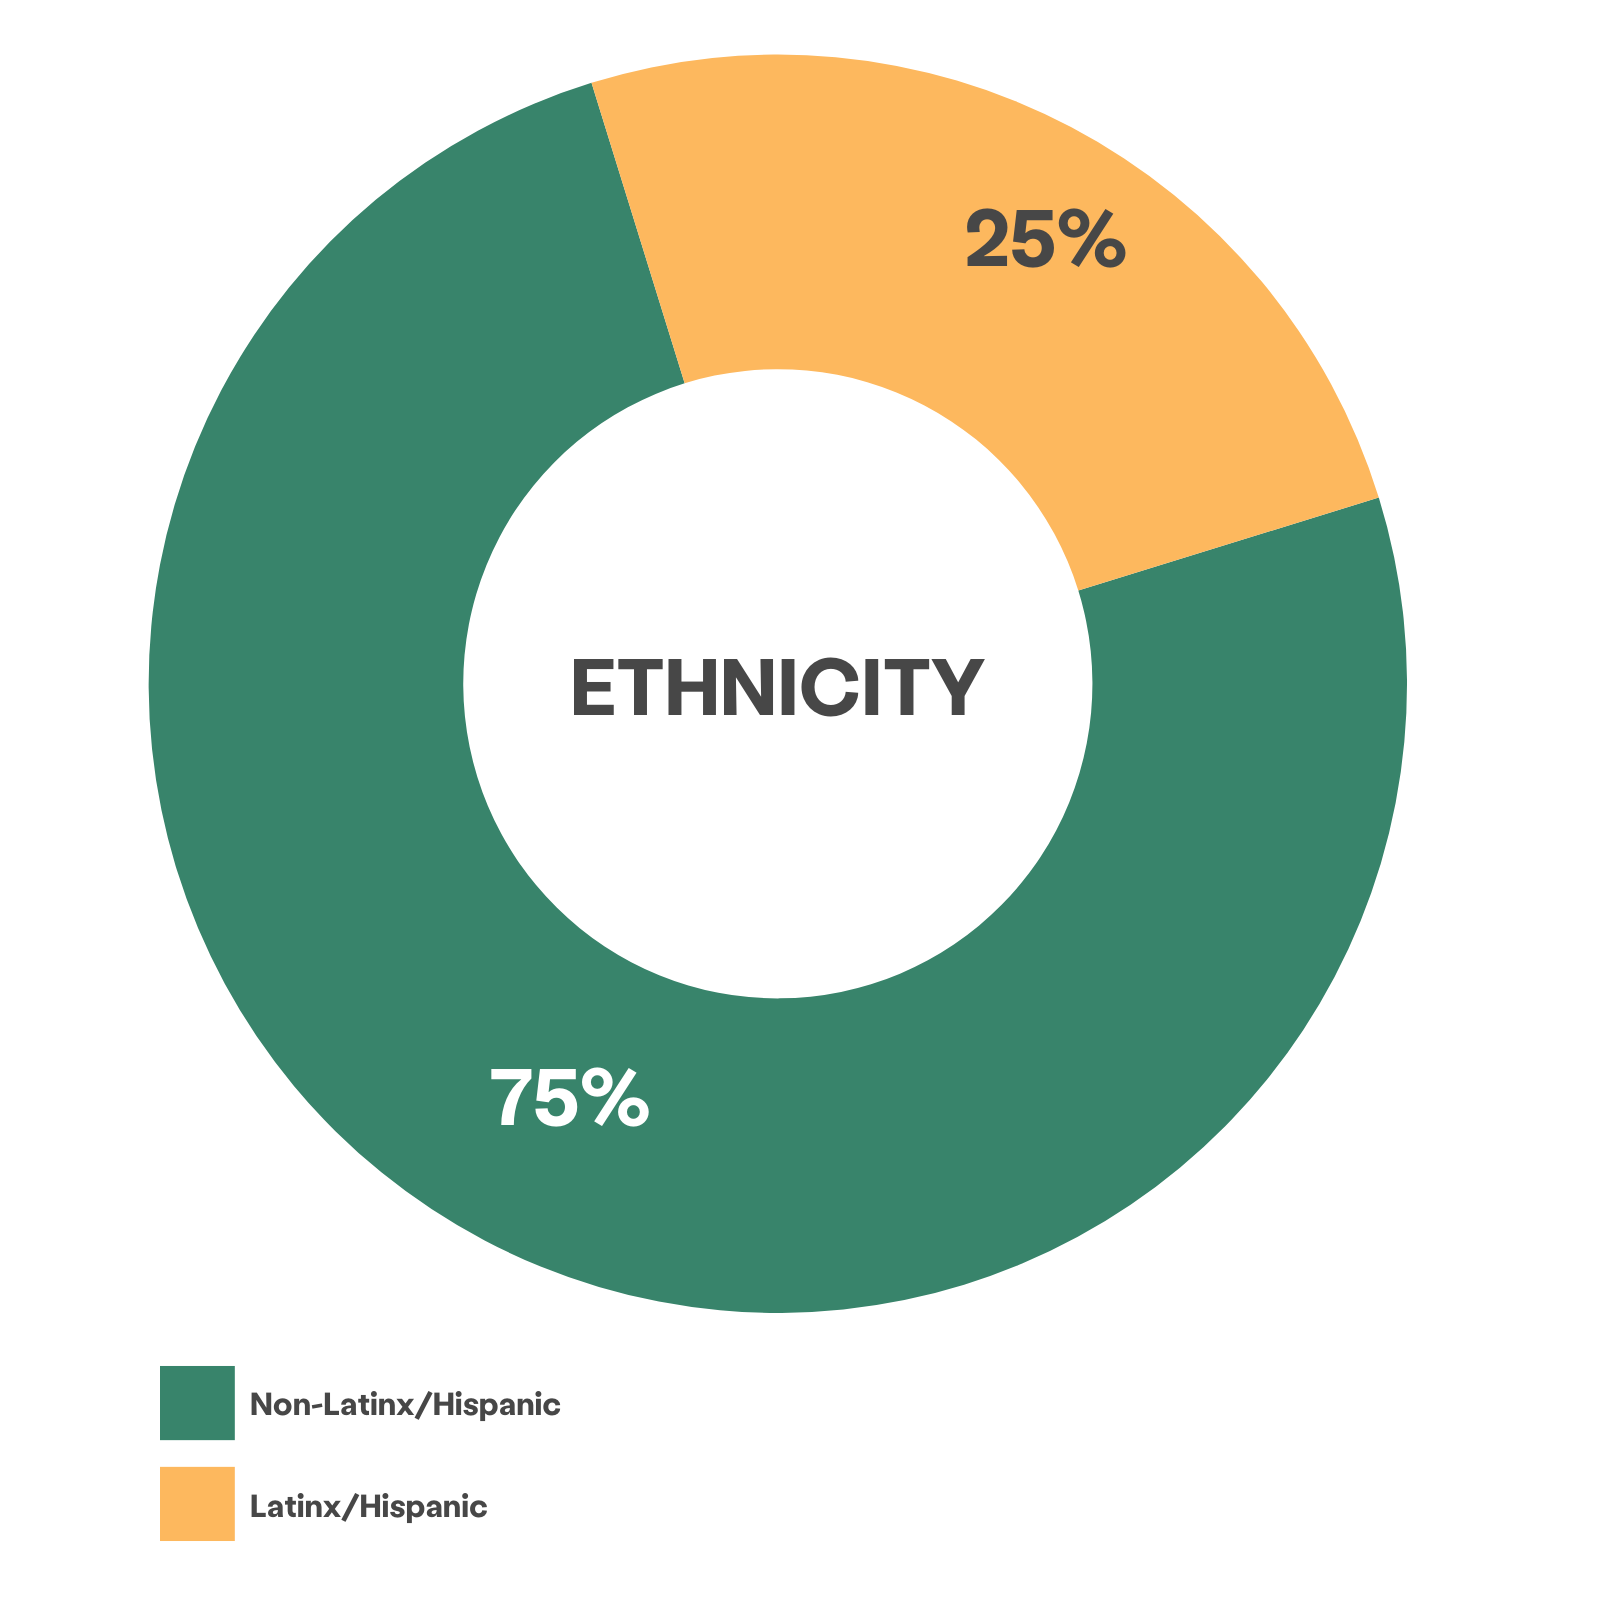 grafico a ruota che mostra 75% di clienti identificati come non latini/ispanici, 25% come latini/ispanici